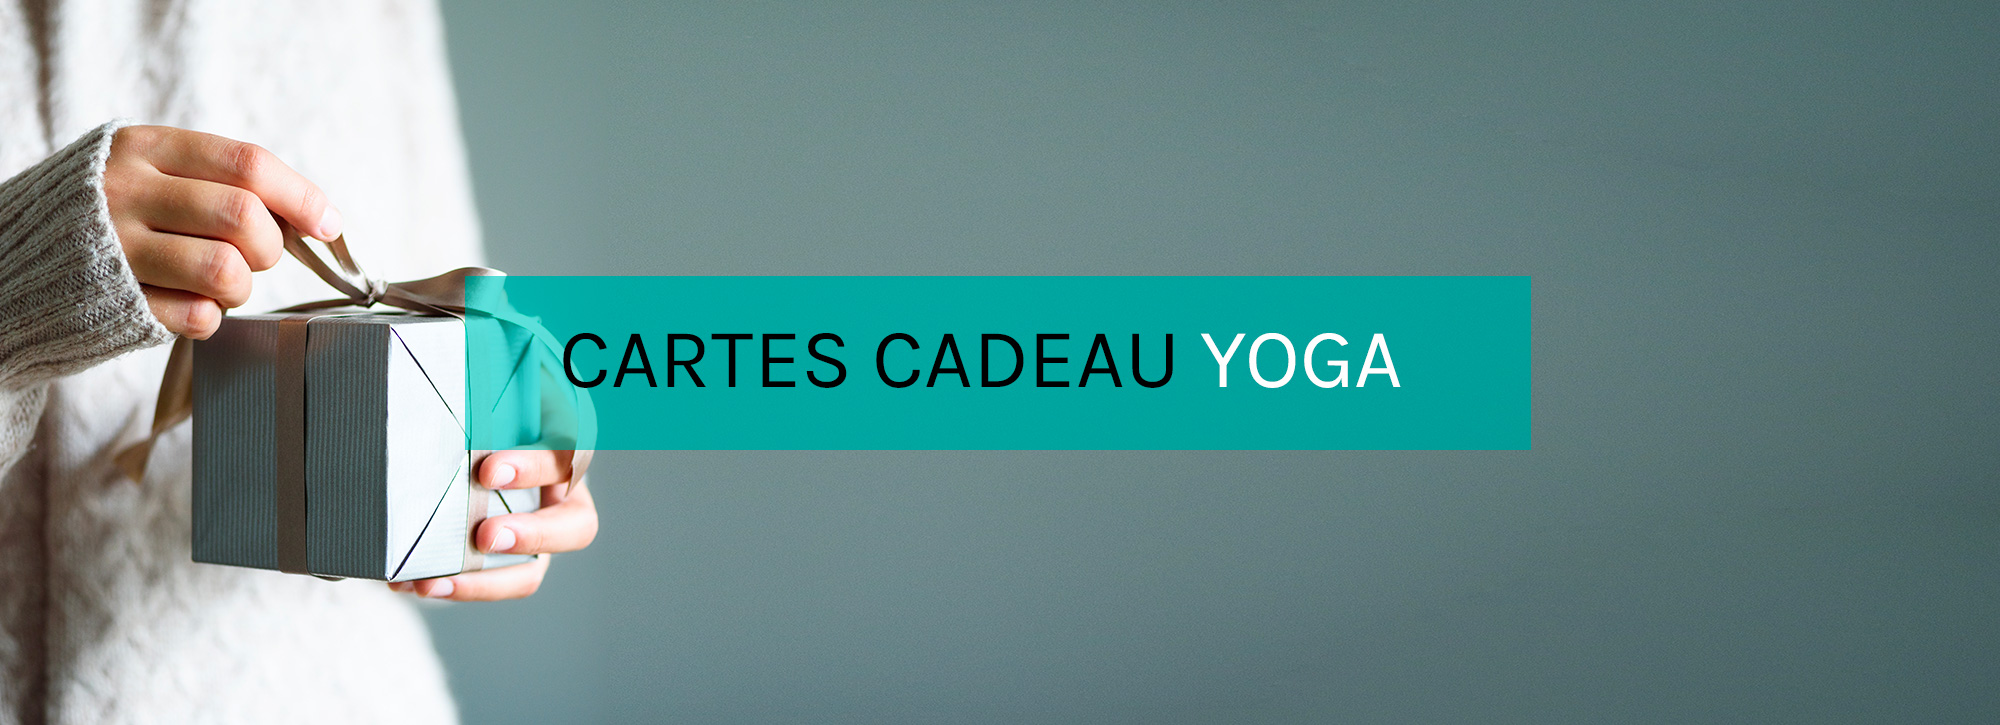 Cartes cadeau yoga à Paris ou en ligne